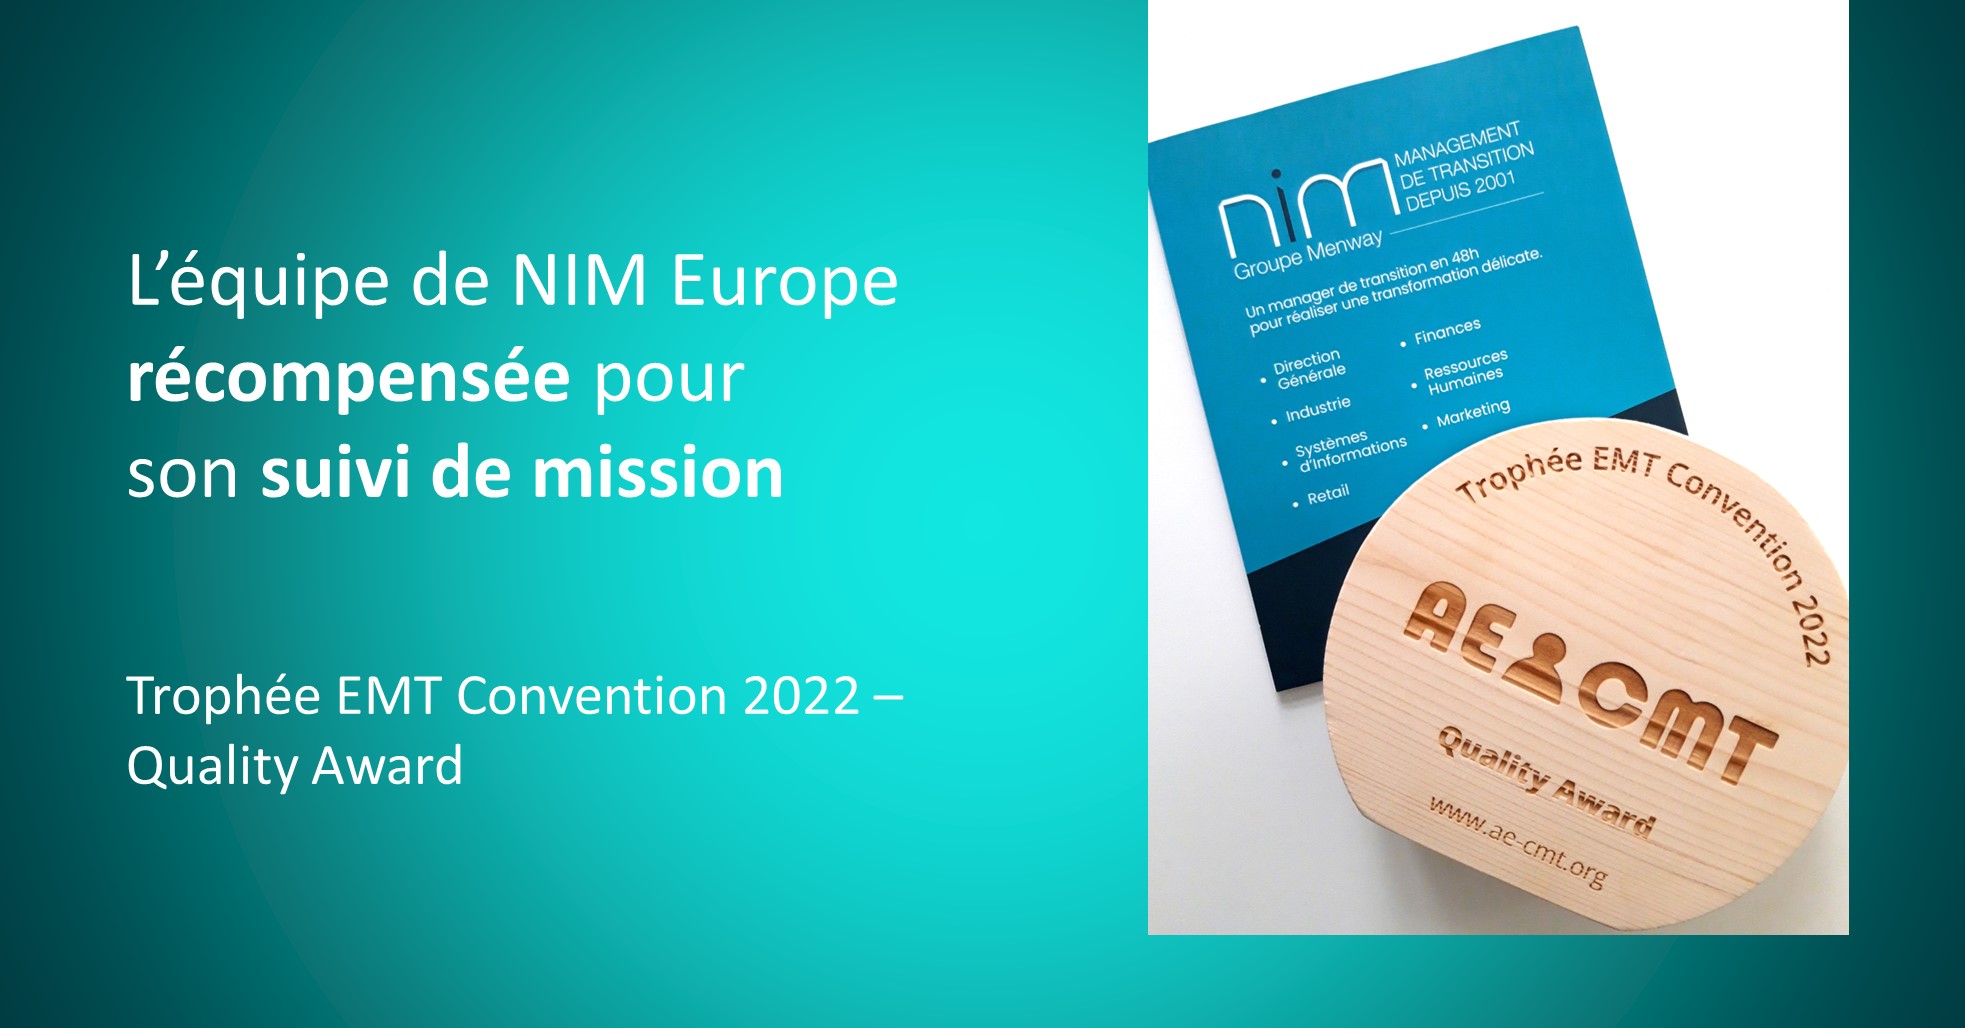 NIM Europe, spécialiste du Management de Transition, reçoit le quality award de l'AE CMT pour son suivi de mission lors de la Convention de 2022.